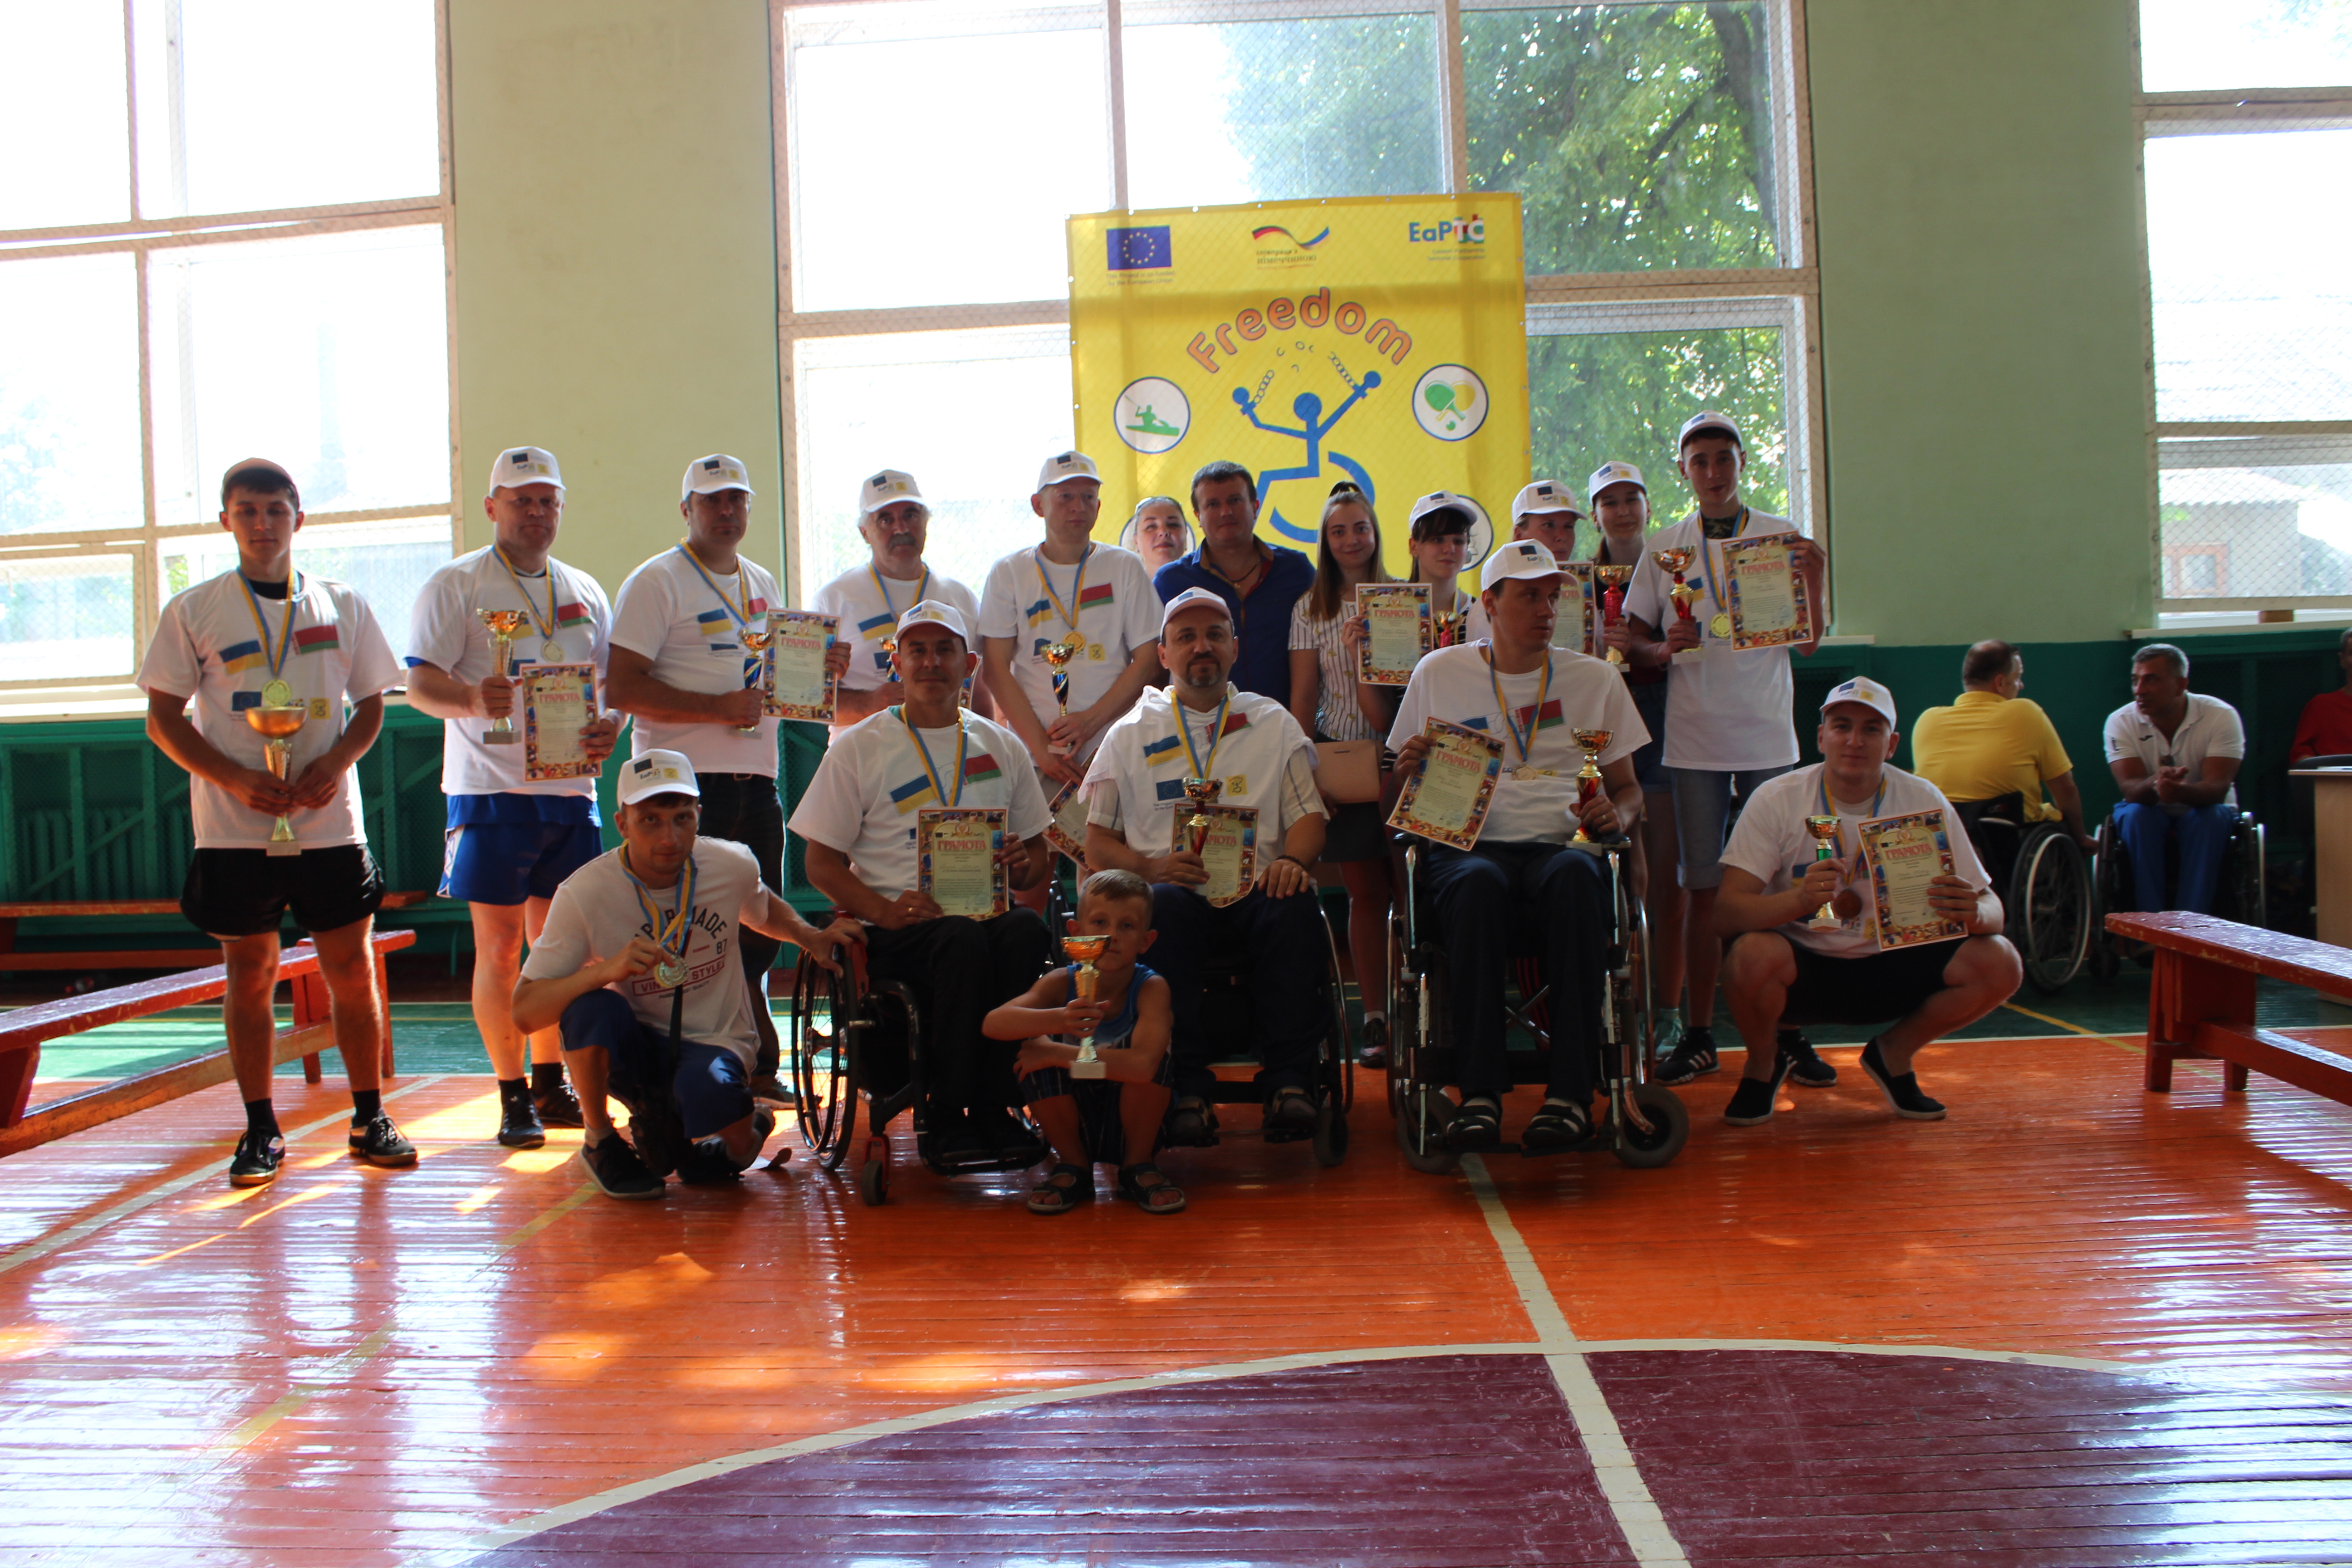 У Житомирі відбулися змагання з бочче, настільного тенісу, армреслінгу та шахів